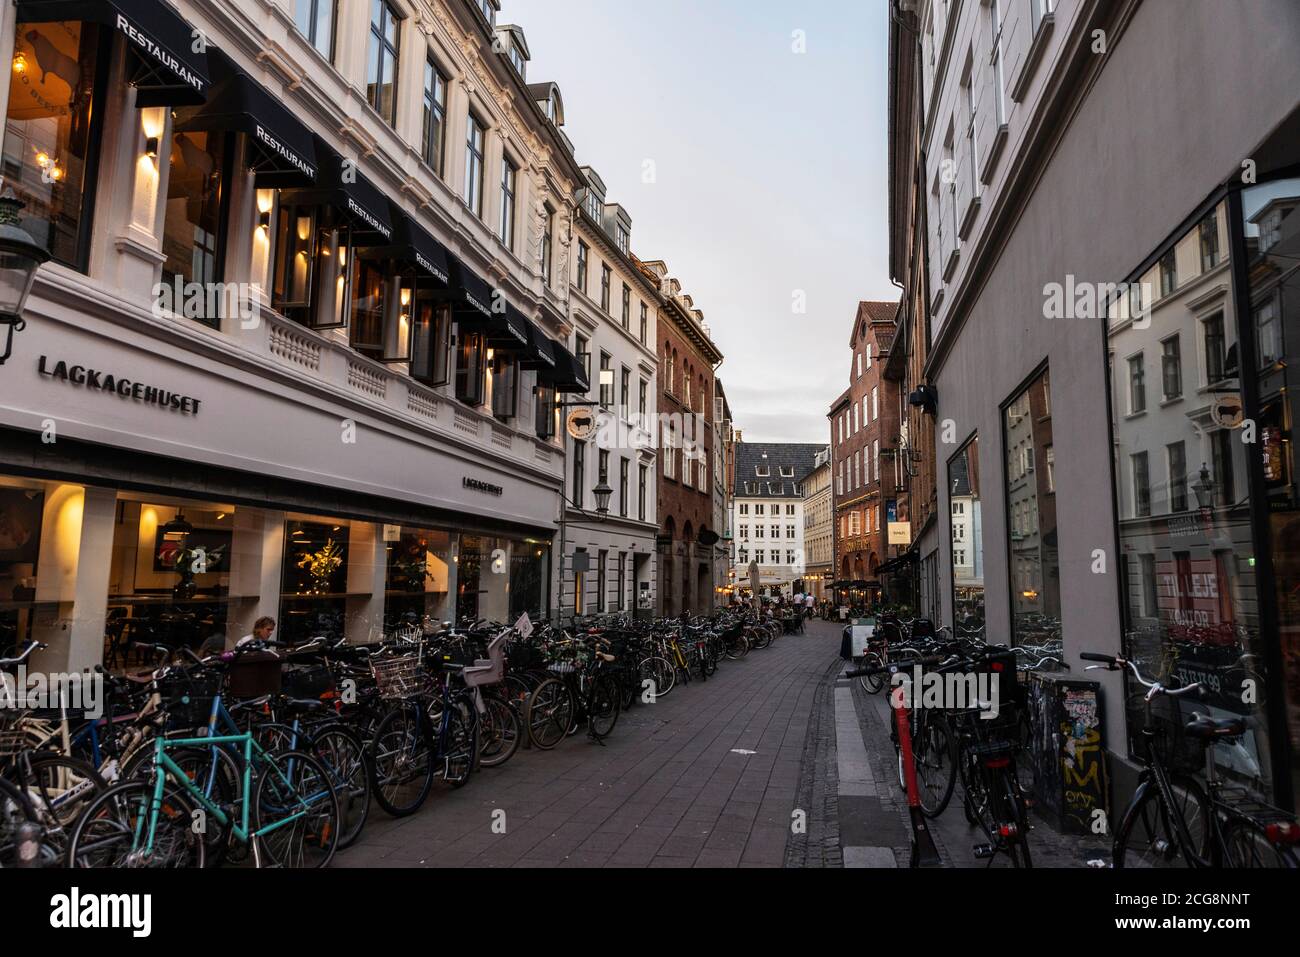 Copenhagen, Denmark - August 26, 2019: Street full of parked bicycles in the old town of Copenhagen, Denmark Stock Photo